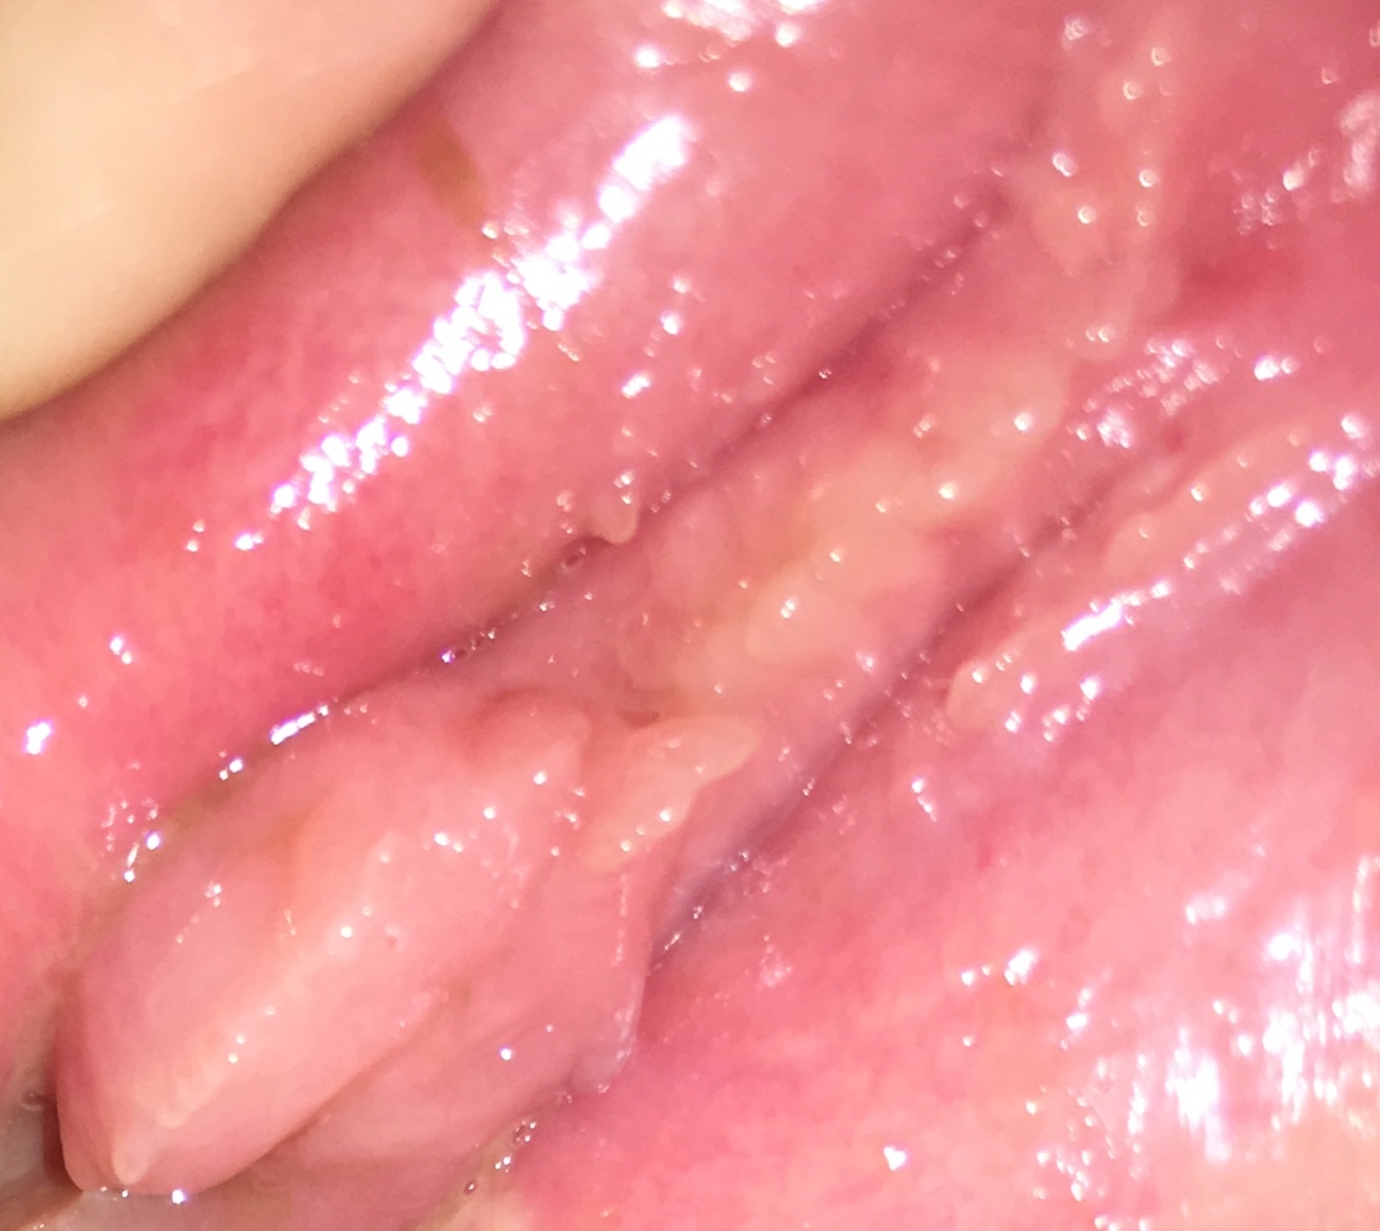 Vestibularis papillomatosis fogamzásgátlás, Vestibular papillomatosis - Nőgyógyászati betegségek